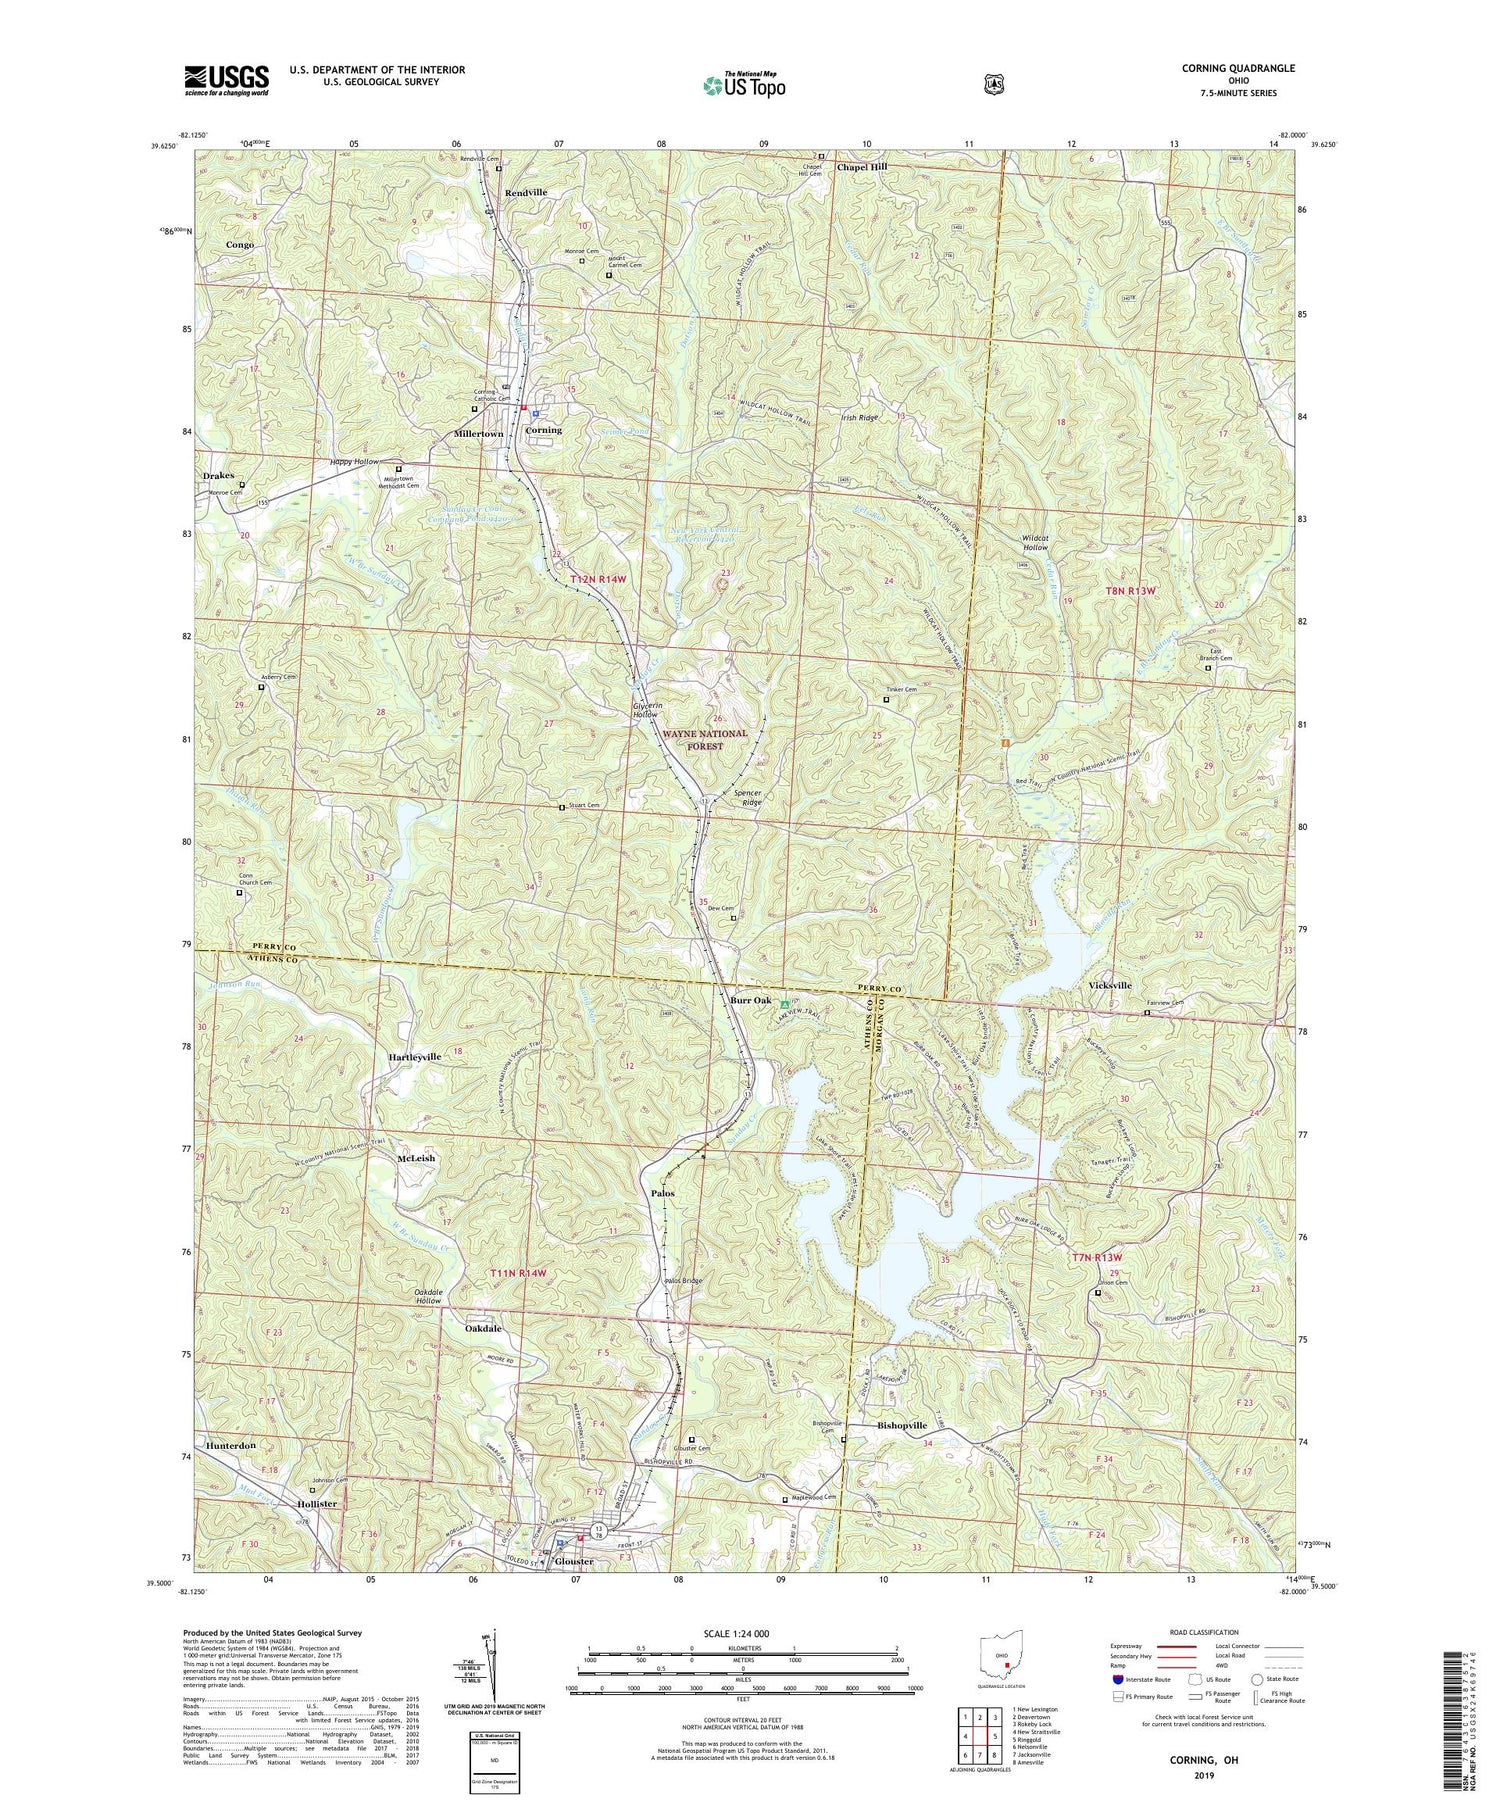 Corning Ohio US Topo Map Image